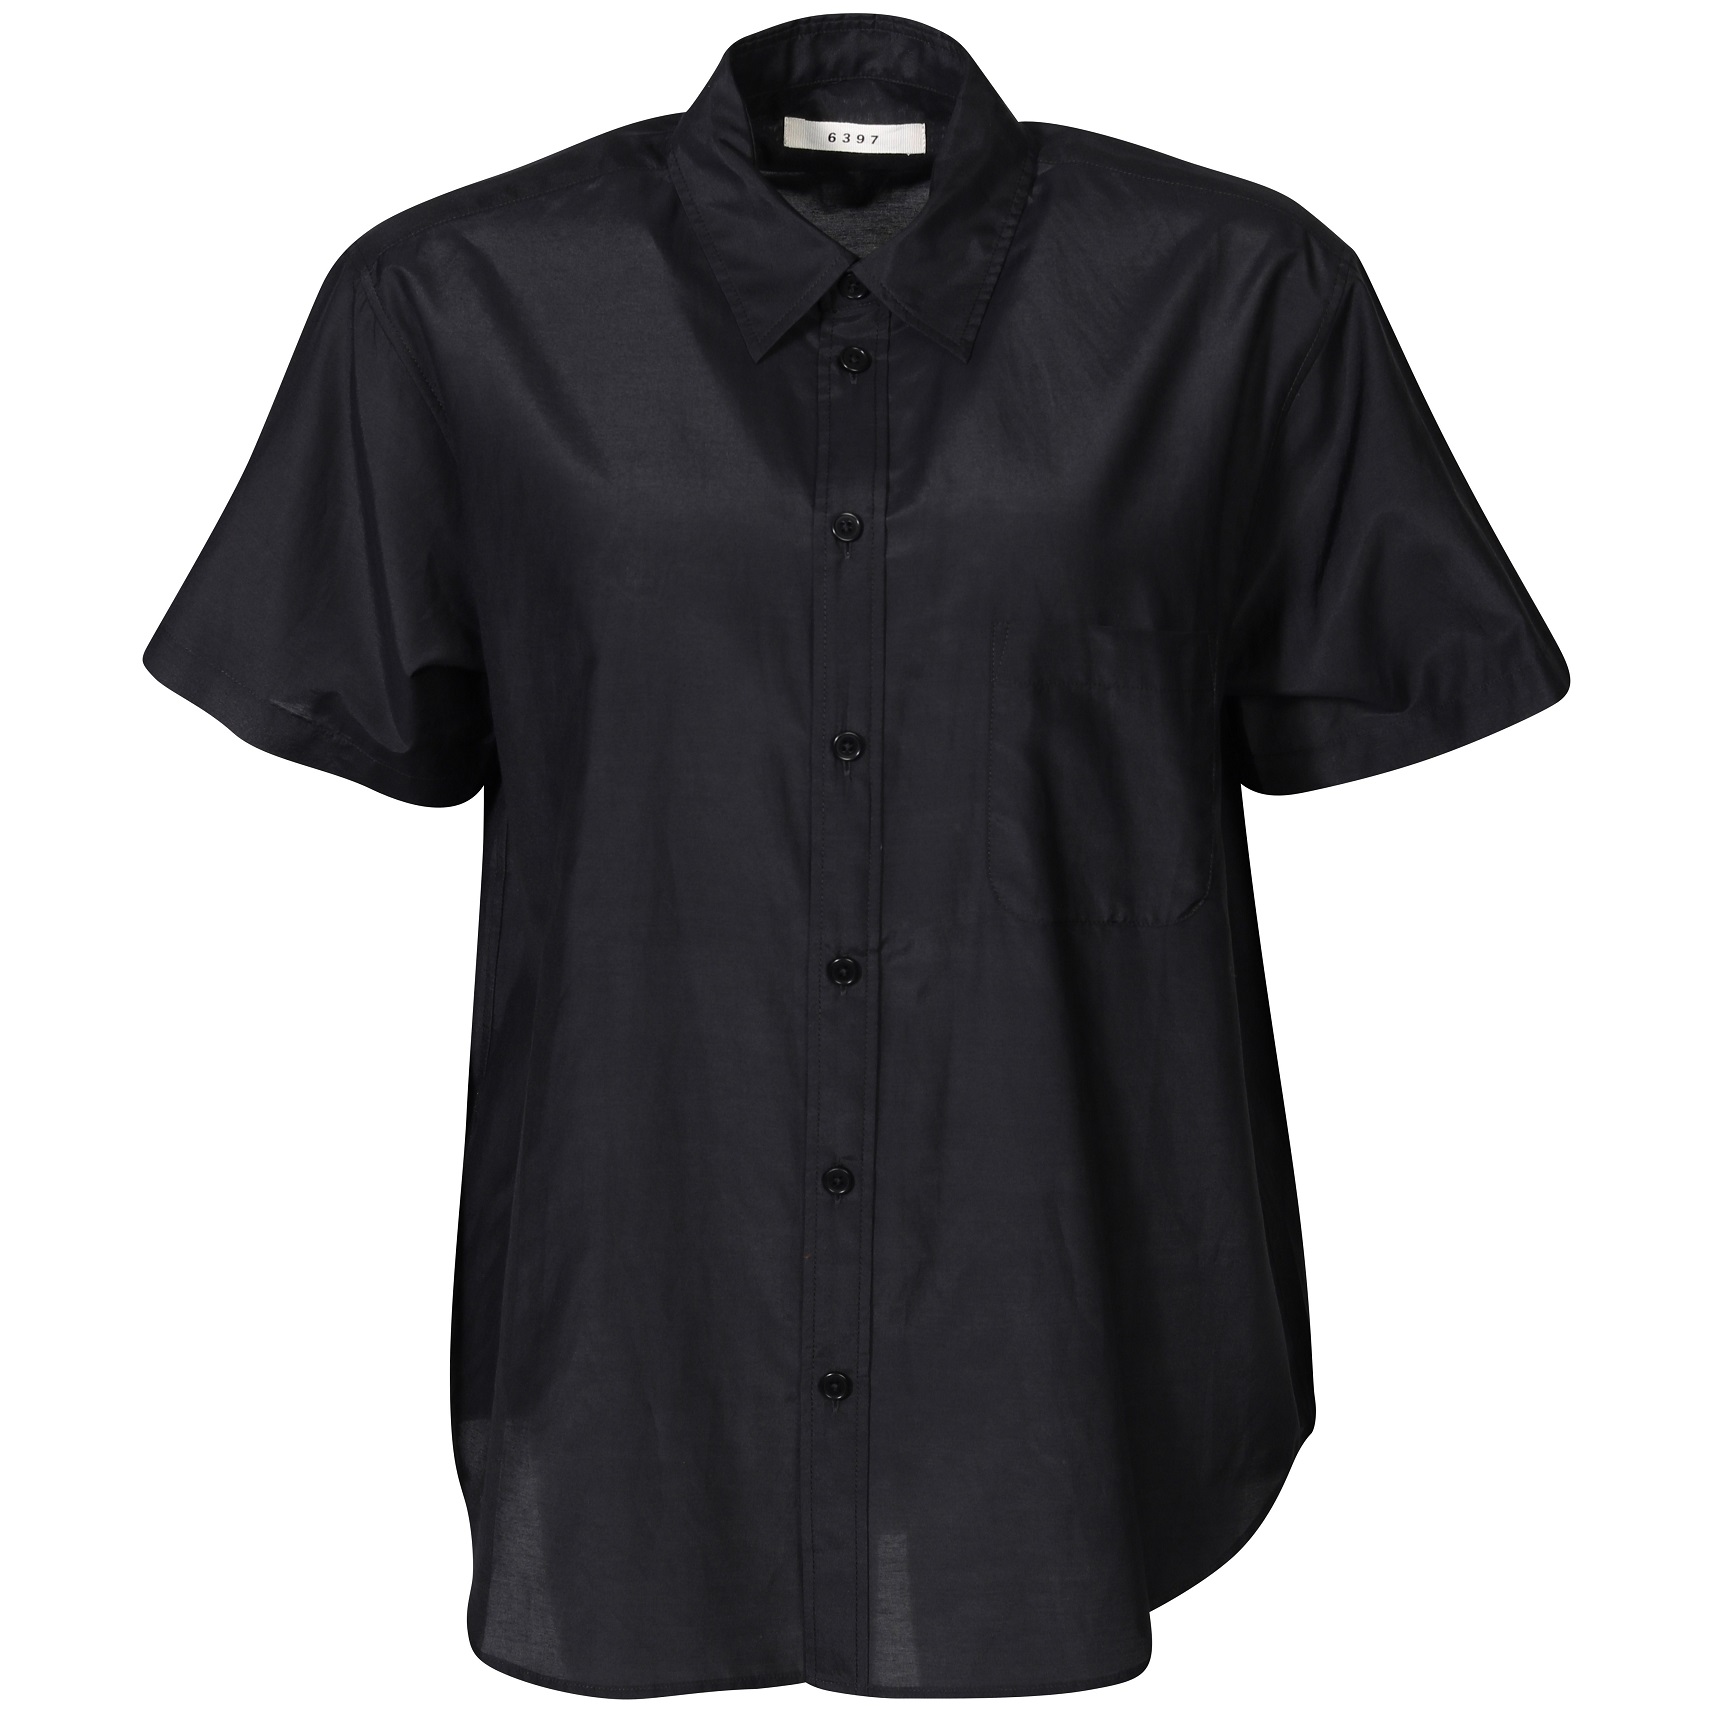 6397 S/S Cotton Silk Shirt in Black